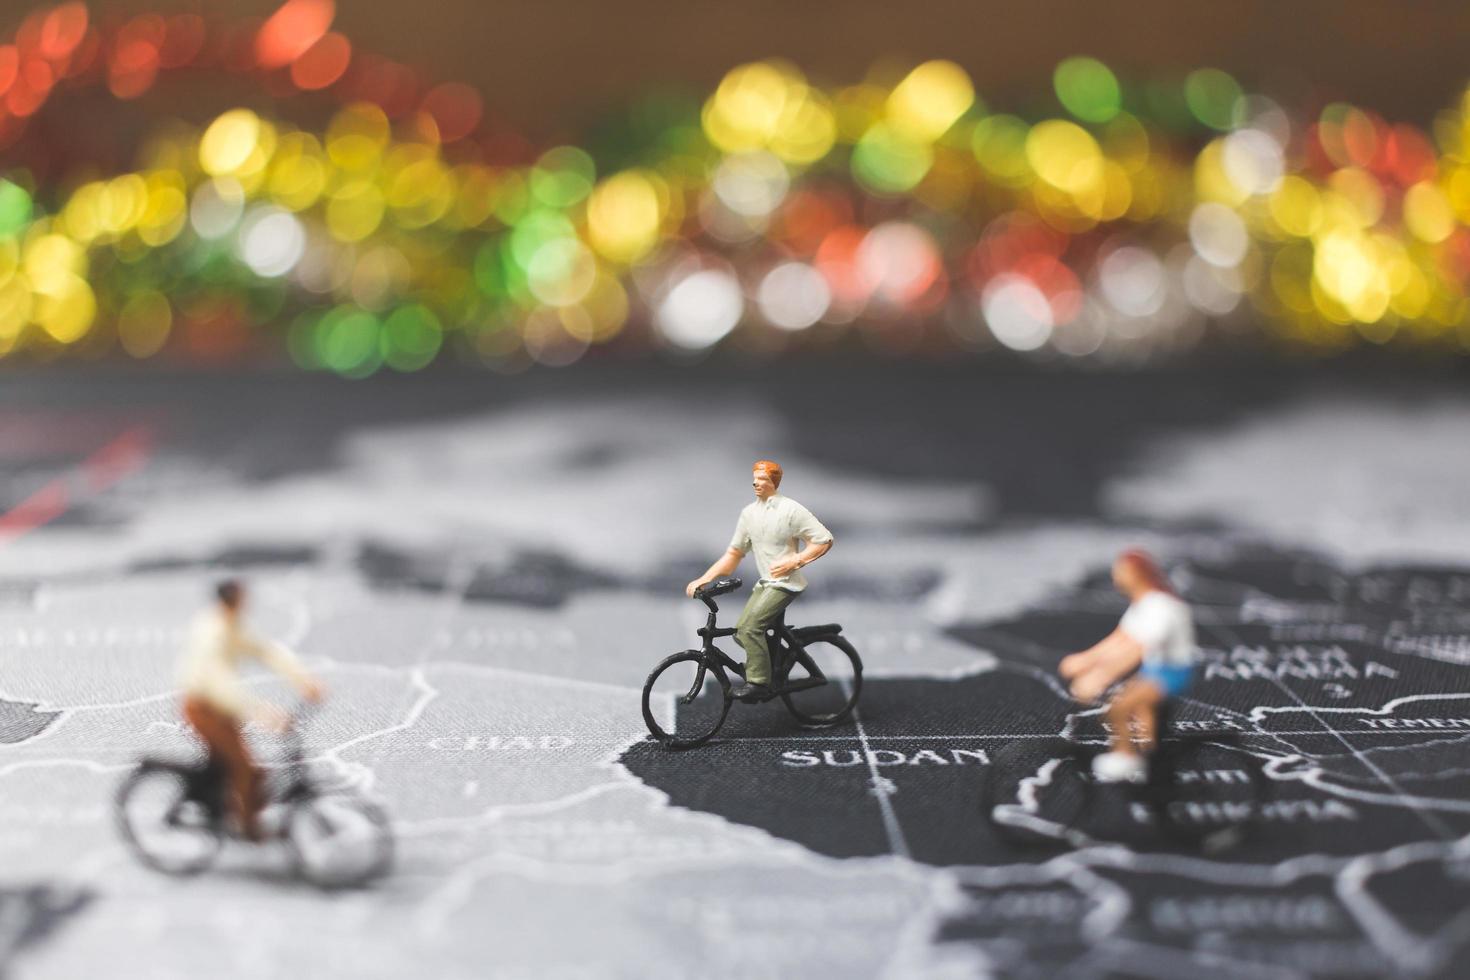 voyageurs miniatures à vélo sur une carte du monde, voyageant et explorant le concept du monde photo